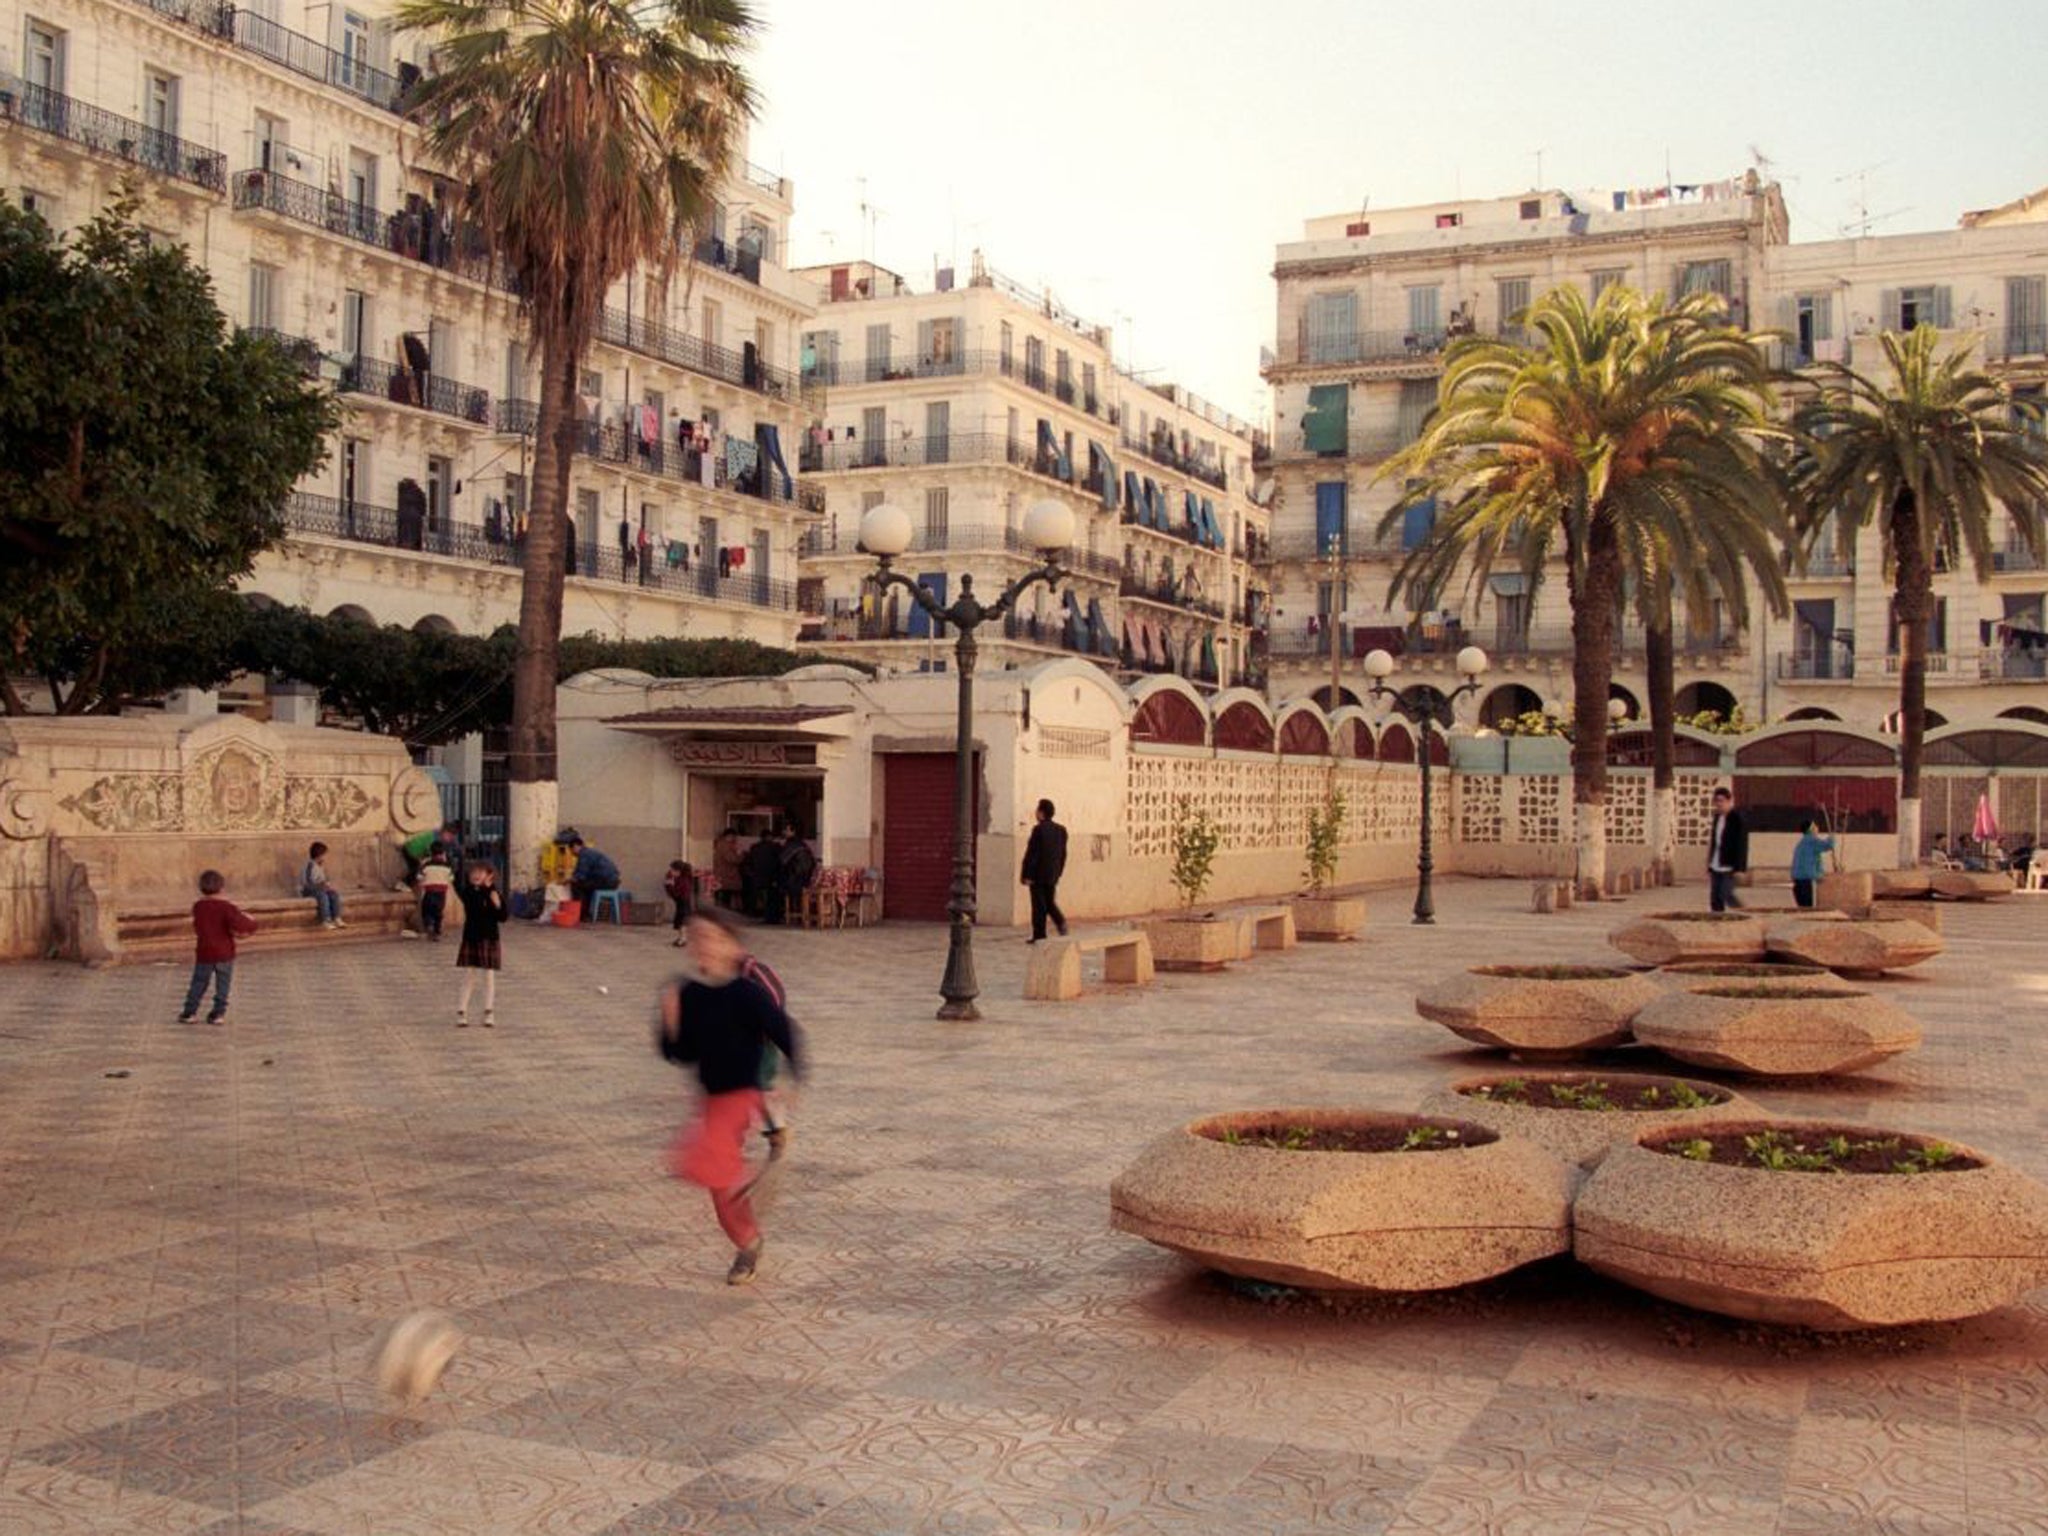 Street life in Algiers’ Bab El Oued neighborhood